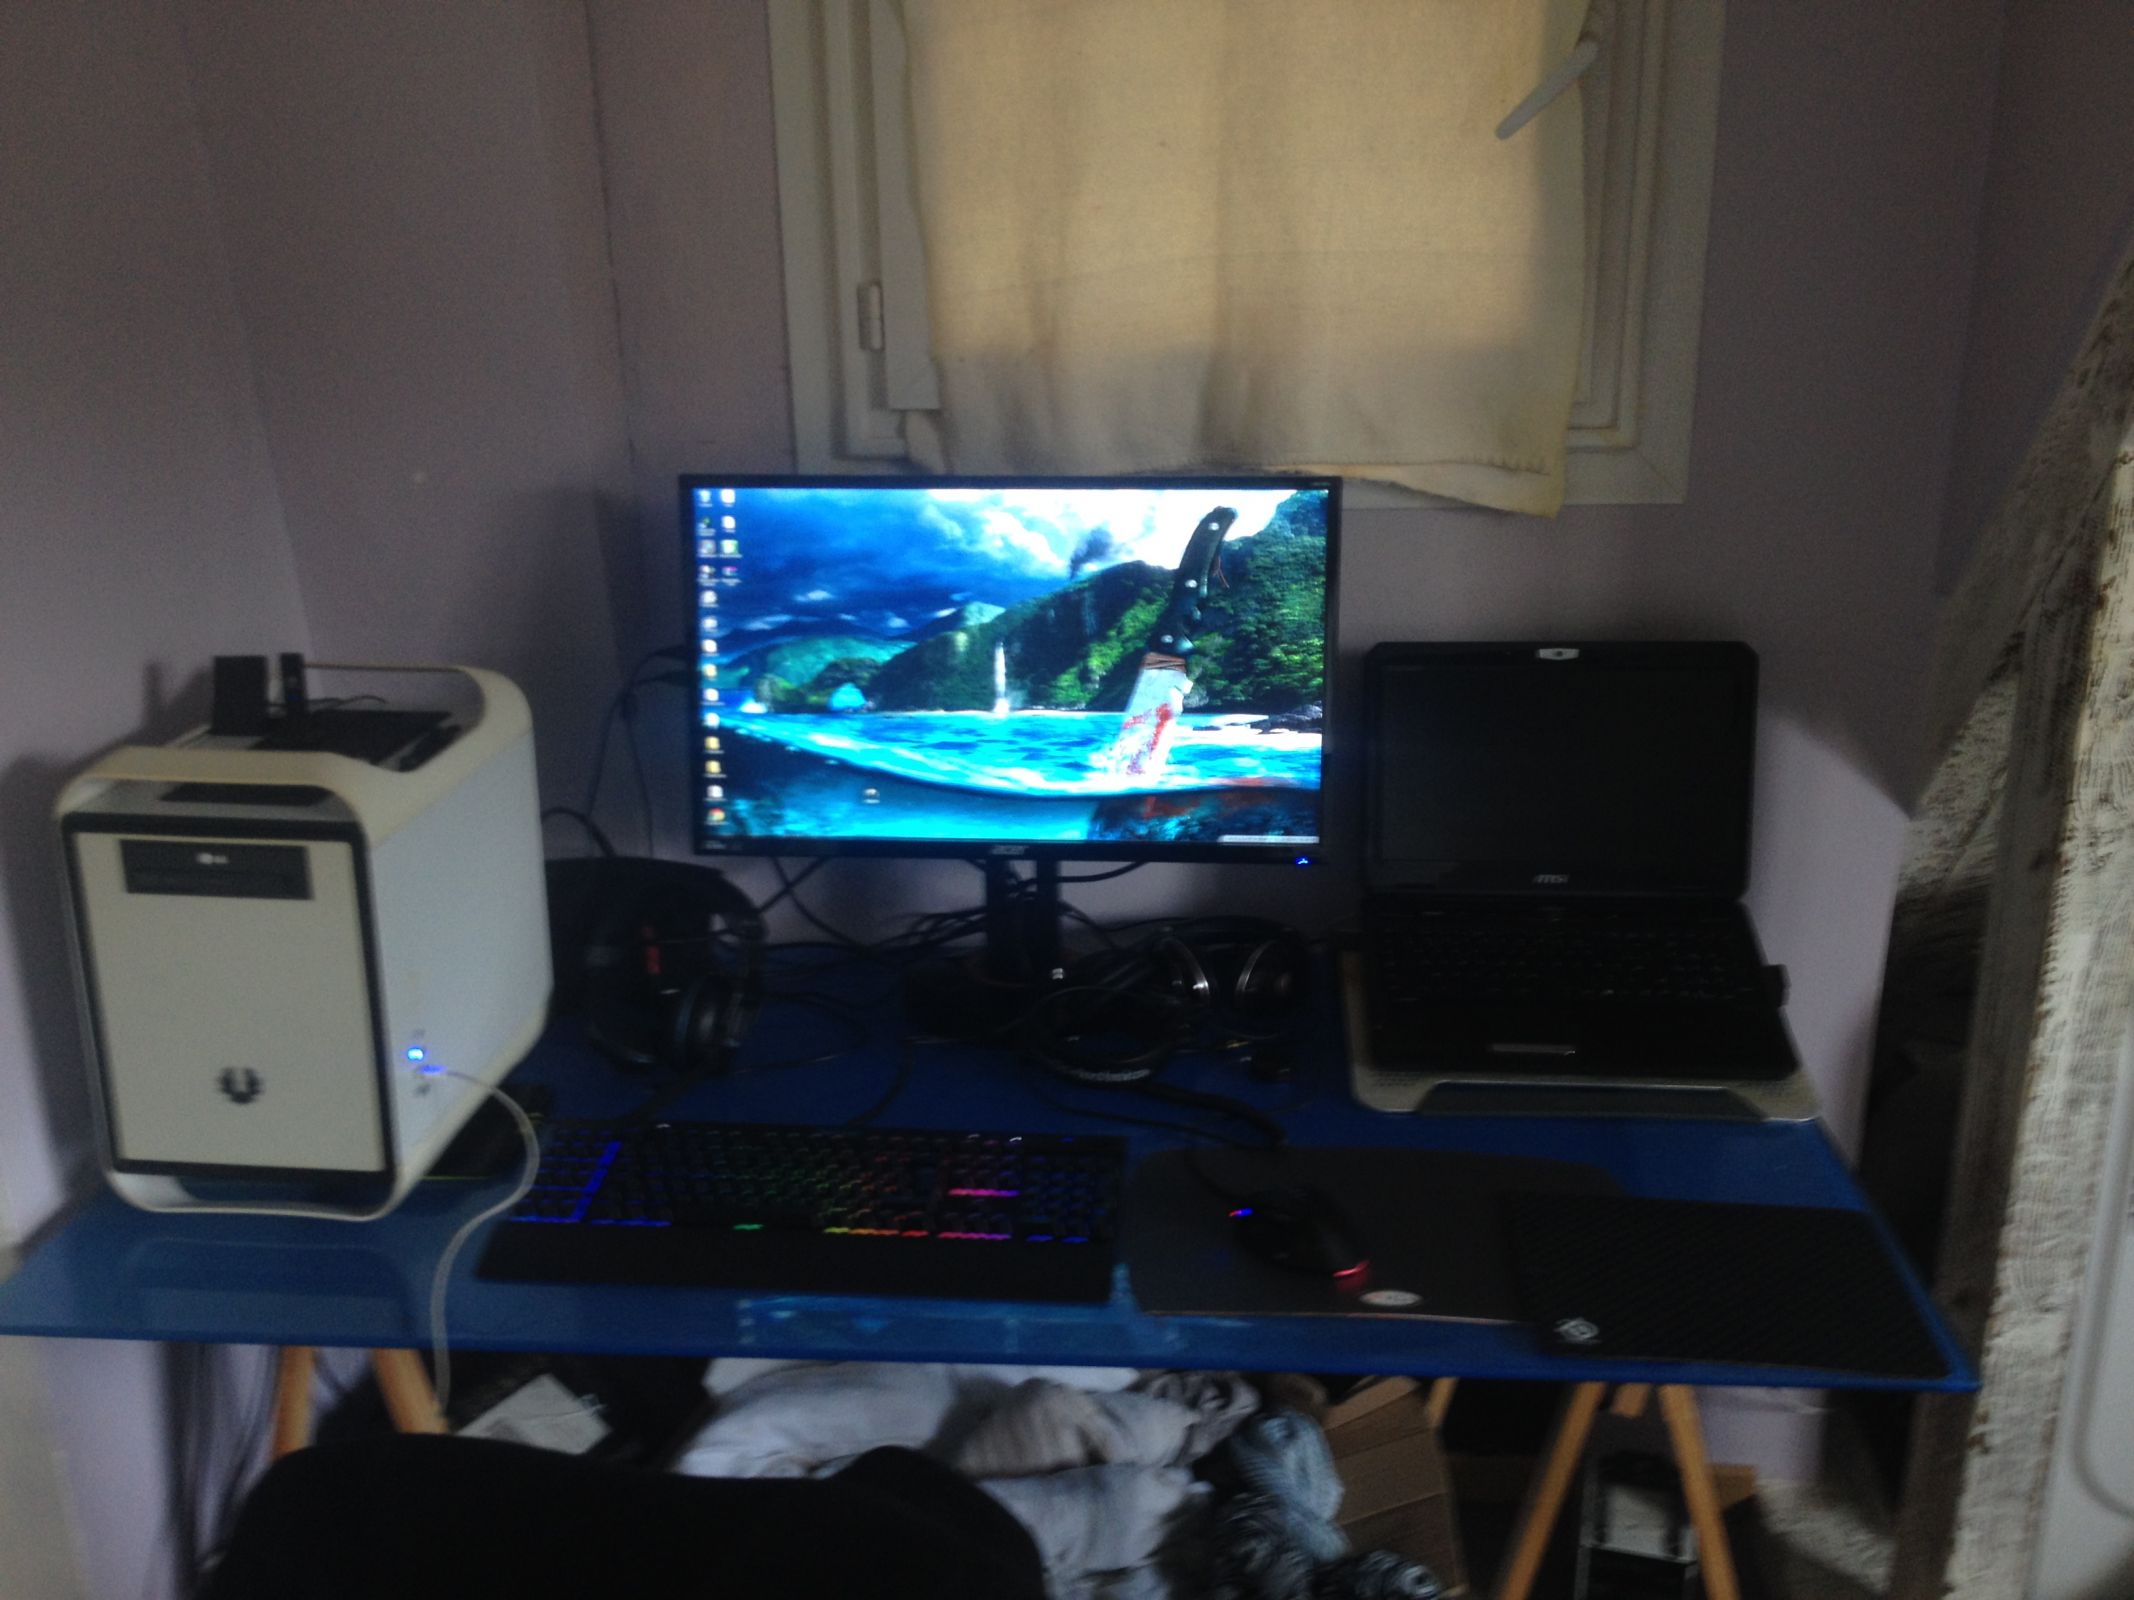 my setup